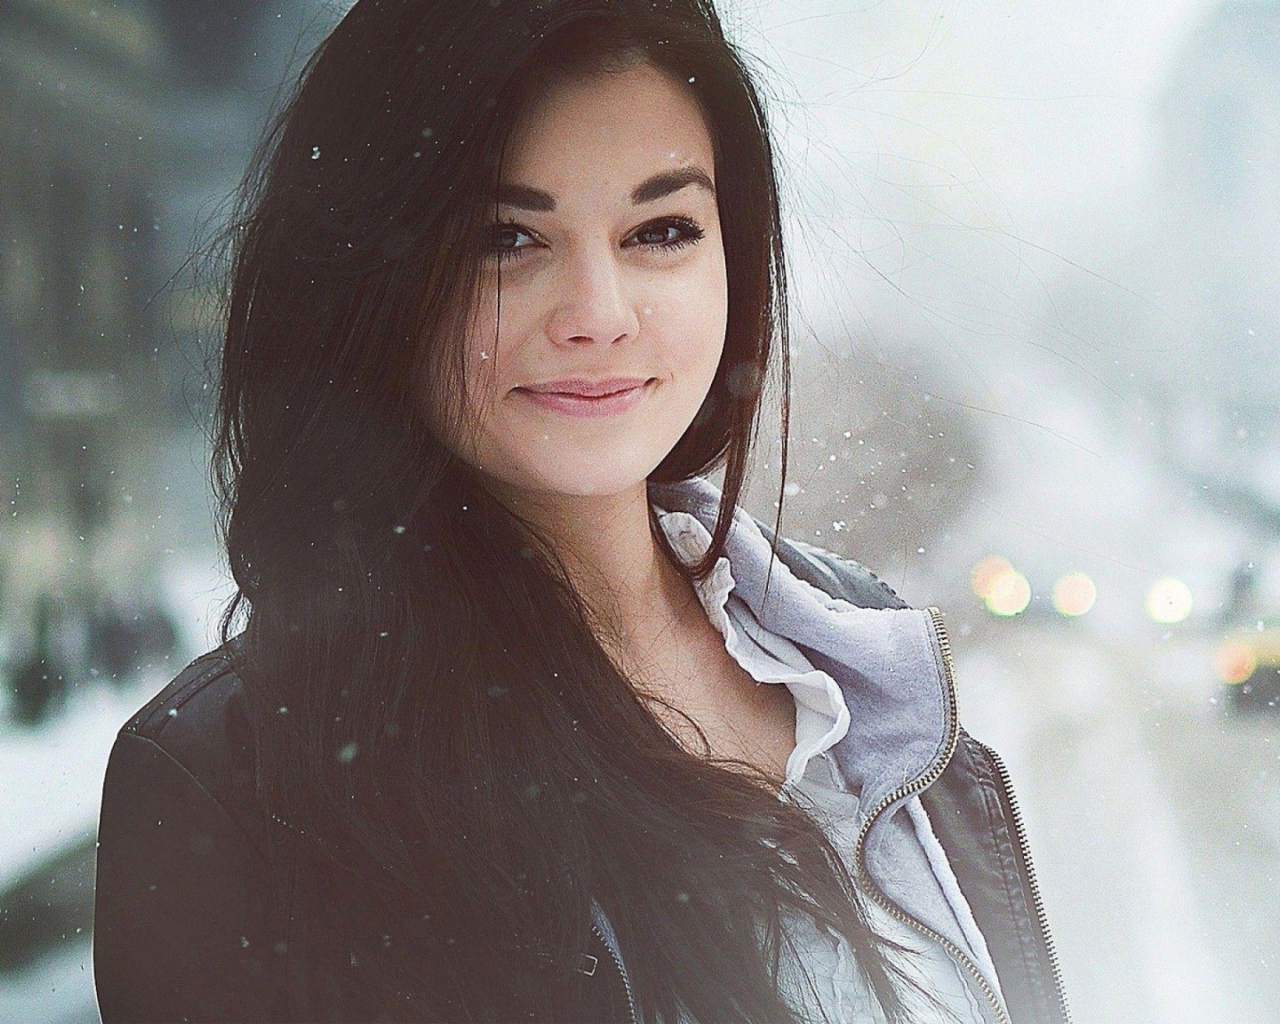 Девушка брюнетка среди снегопада